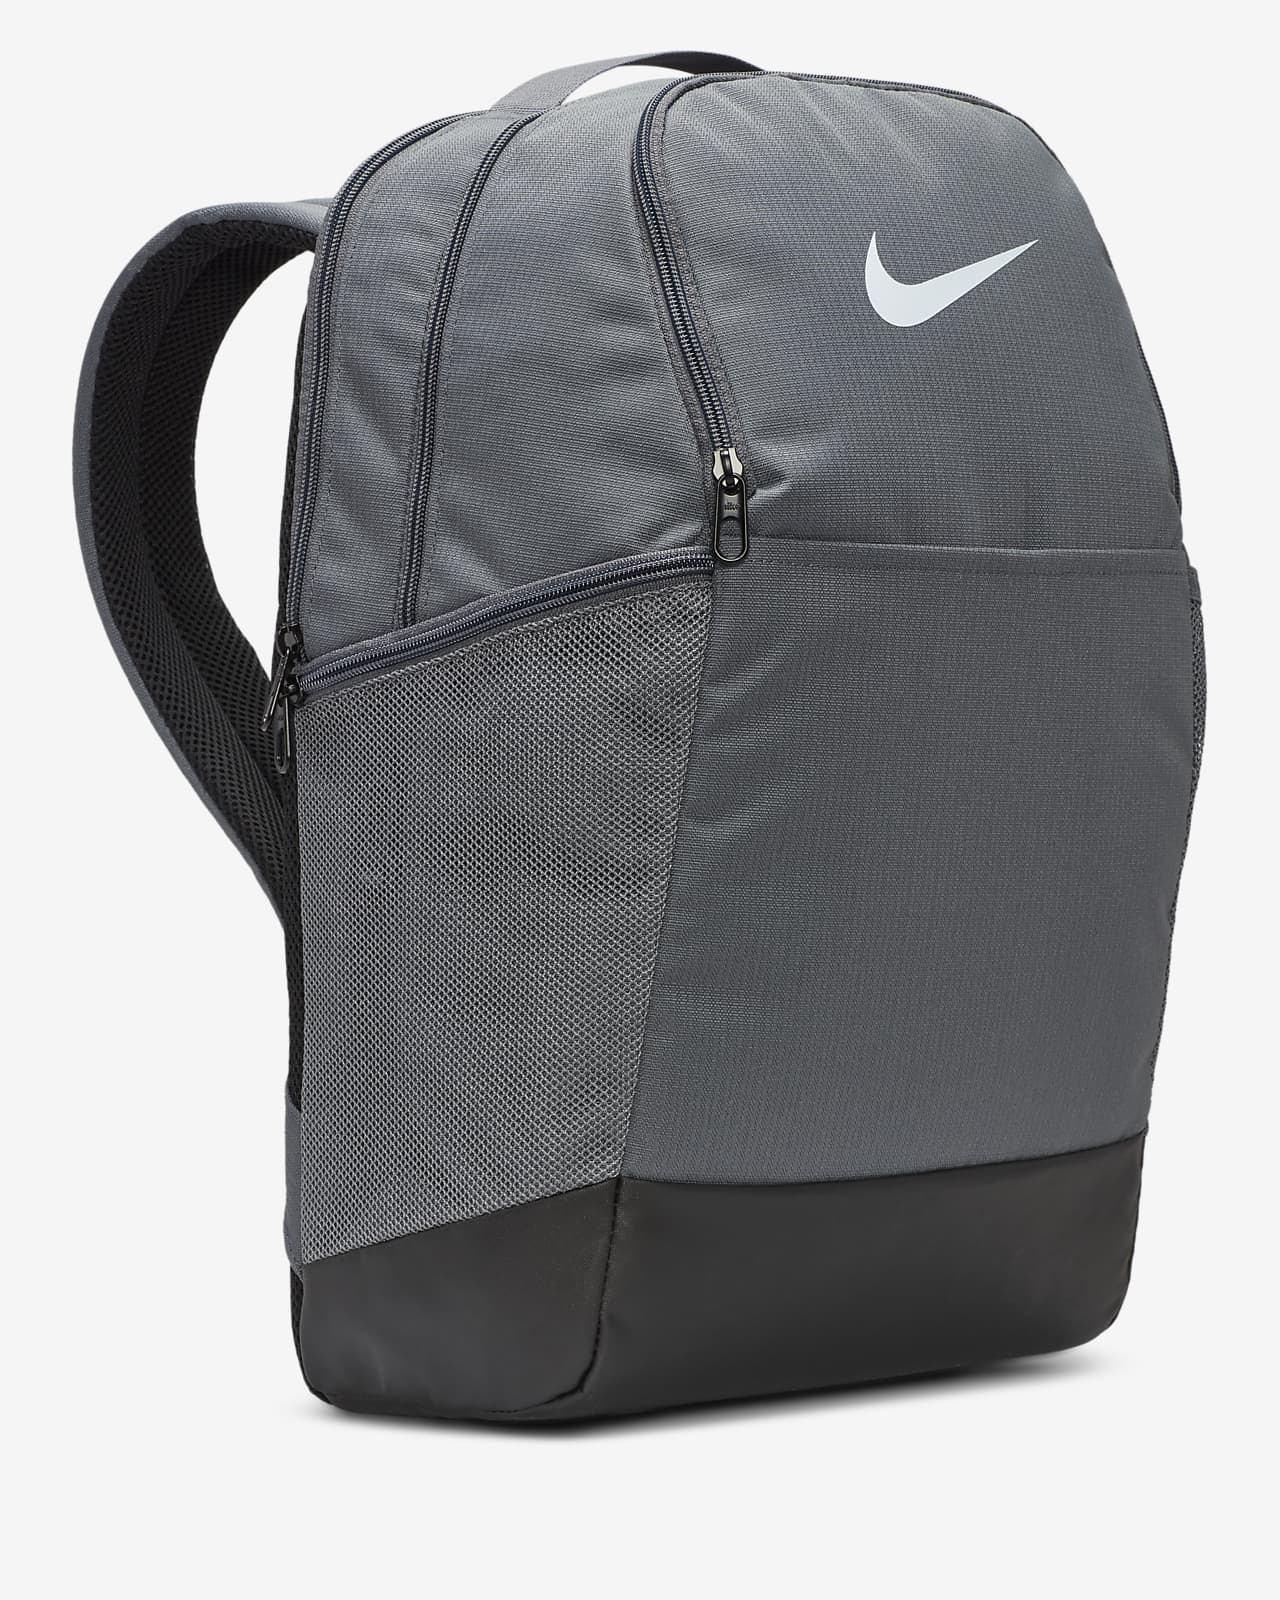 Nike Brasilia Training bag [ size XS] 682